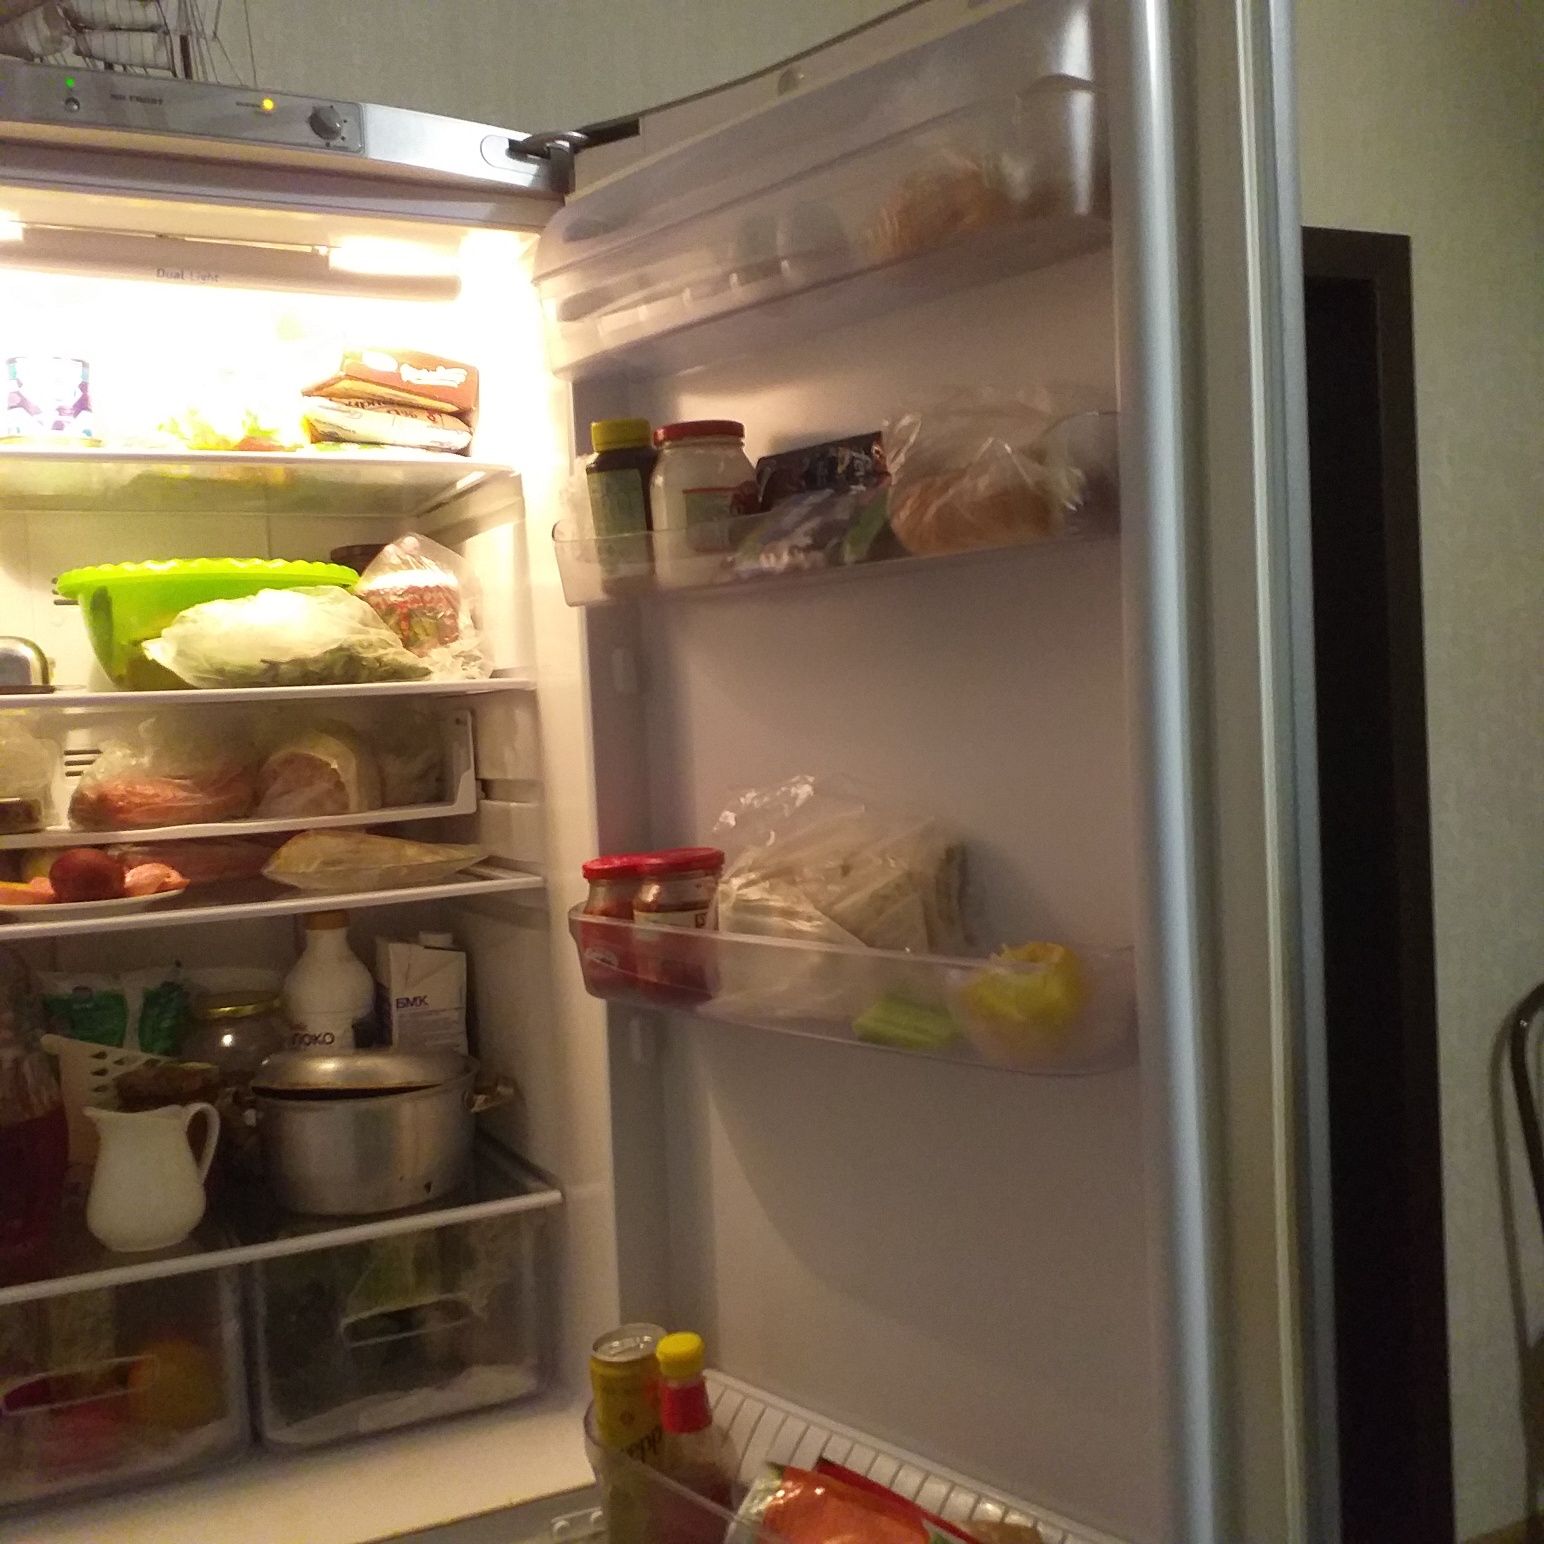 Холодильник Индезит